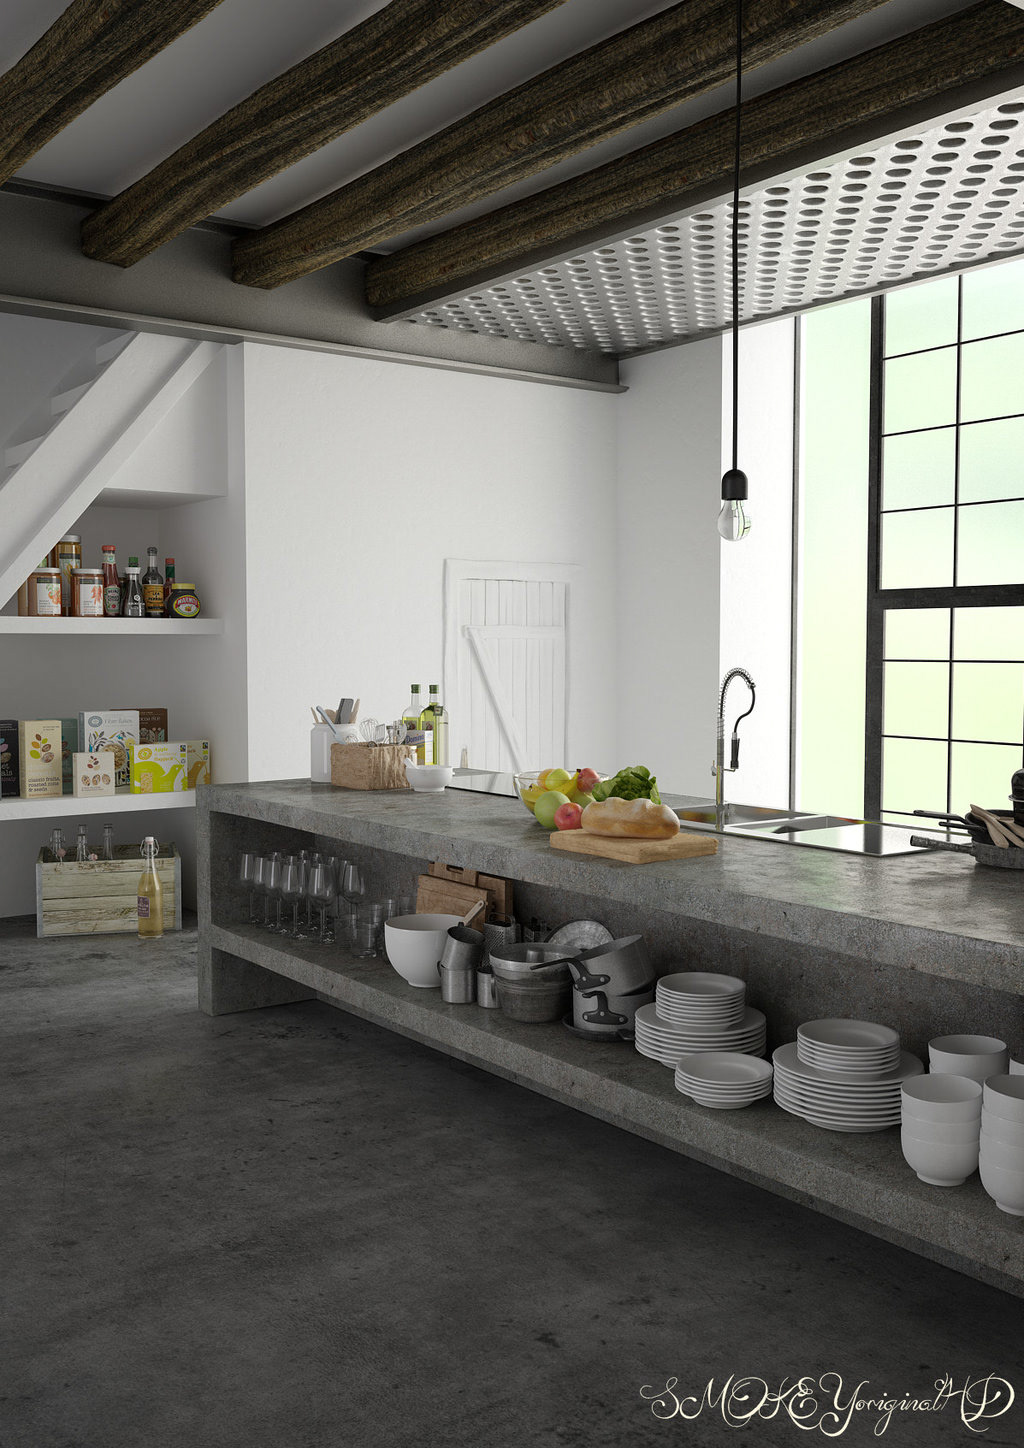 cinema 4d vray photoshop 3D room Interior kitchen design modern